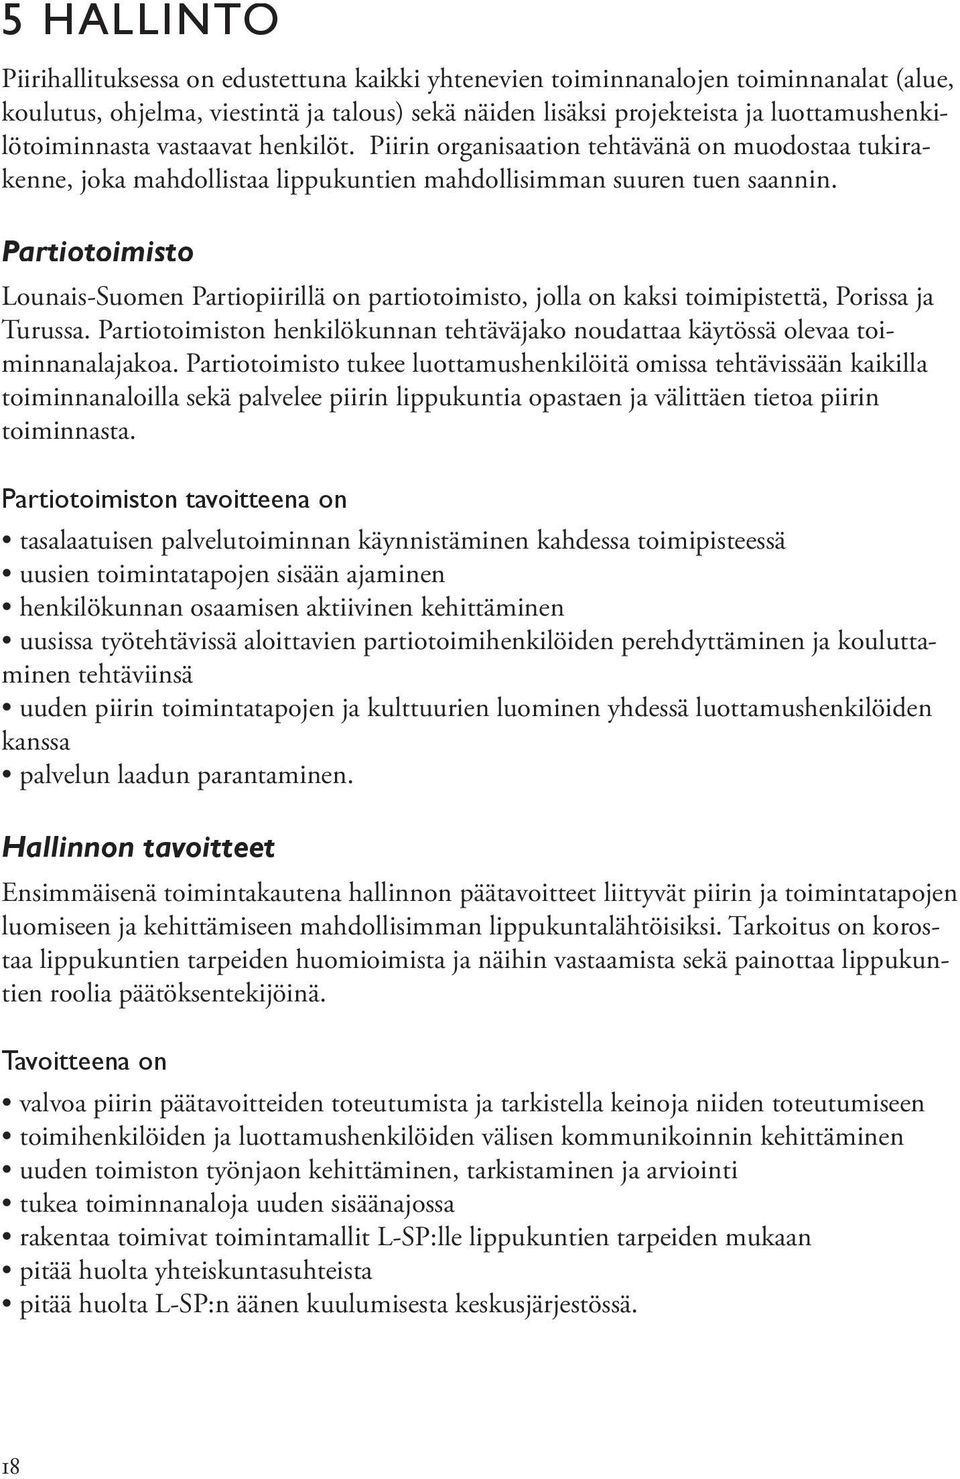 Partiotoimisto Lounais-Suomen Partiopiirillä on partiotoimisto, jolla on kaksi toimipistettä, Porissa ja Turussa. Partiotoimiston henkilökunnan tehtäväjako noudattaa käytössä olevaa toiminnanalajakoa.